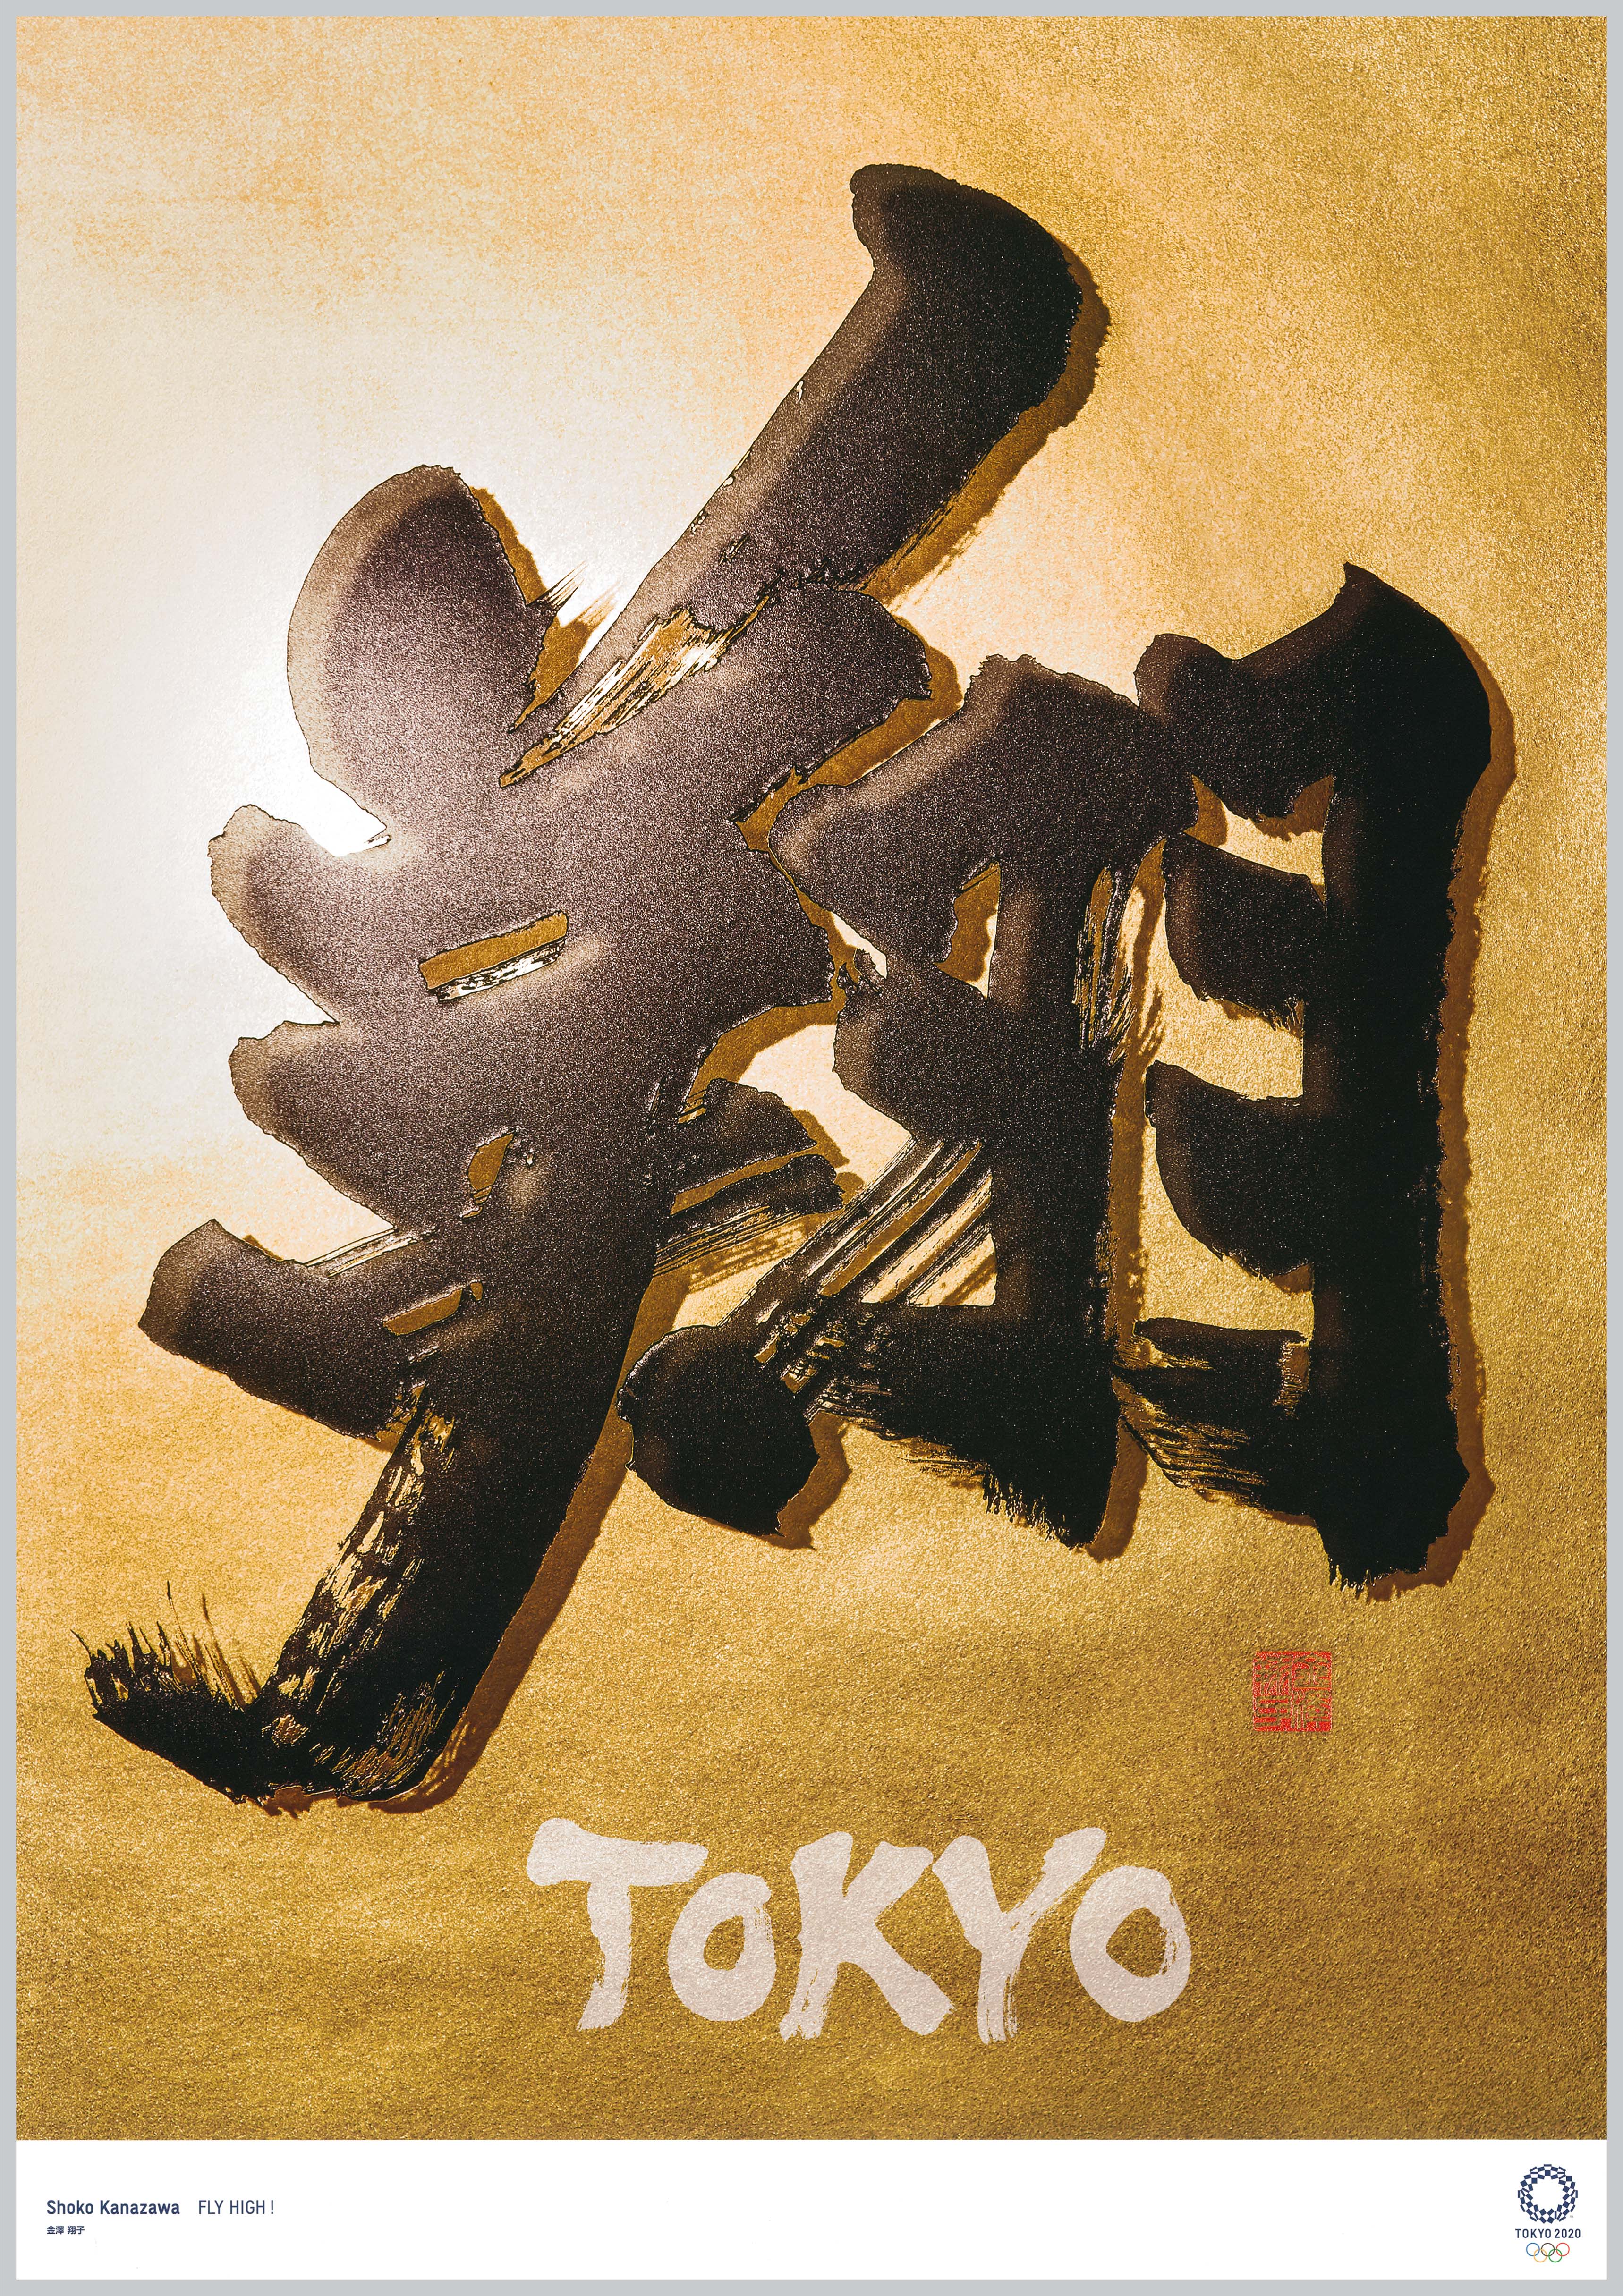 东京艺术海报创作者金泽翔子 希望运动员们 飞翔 至世界舞台